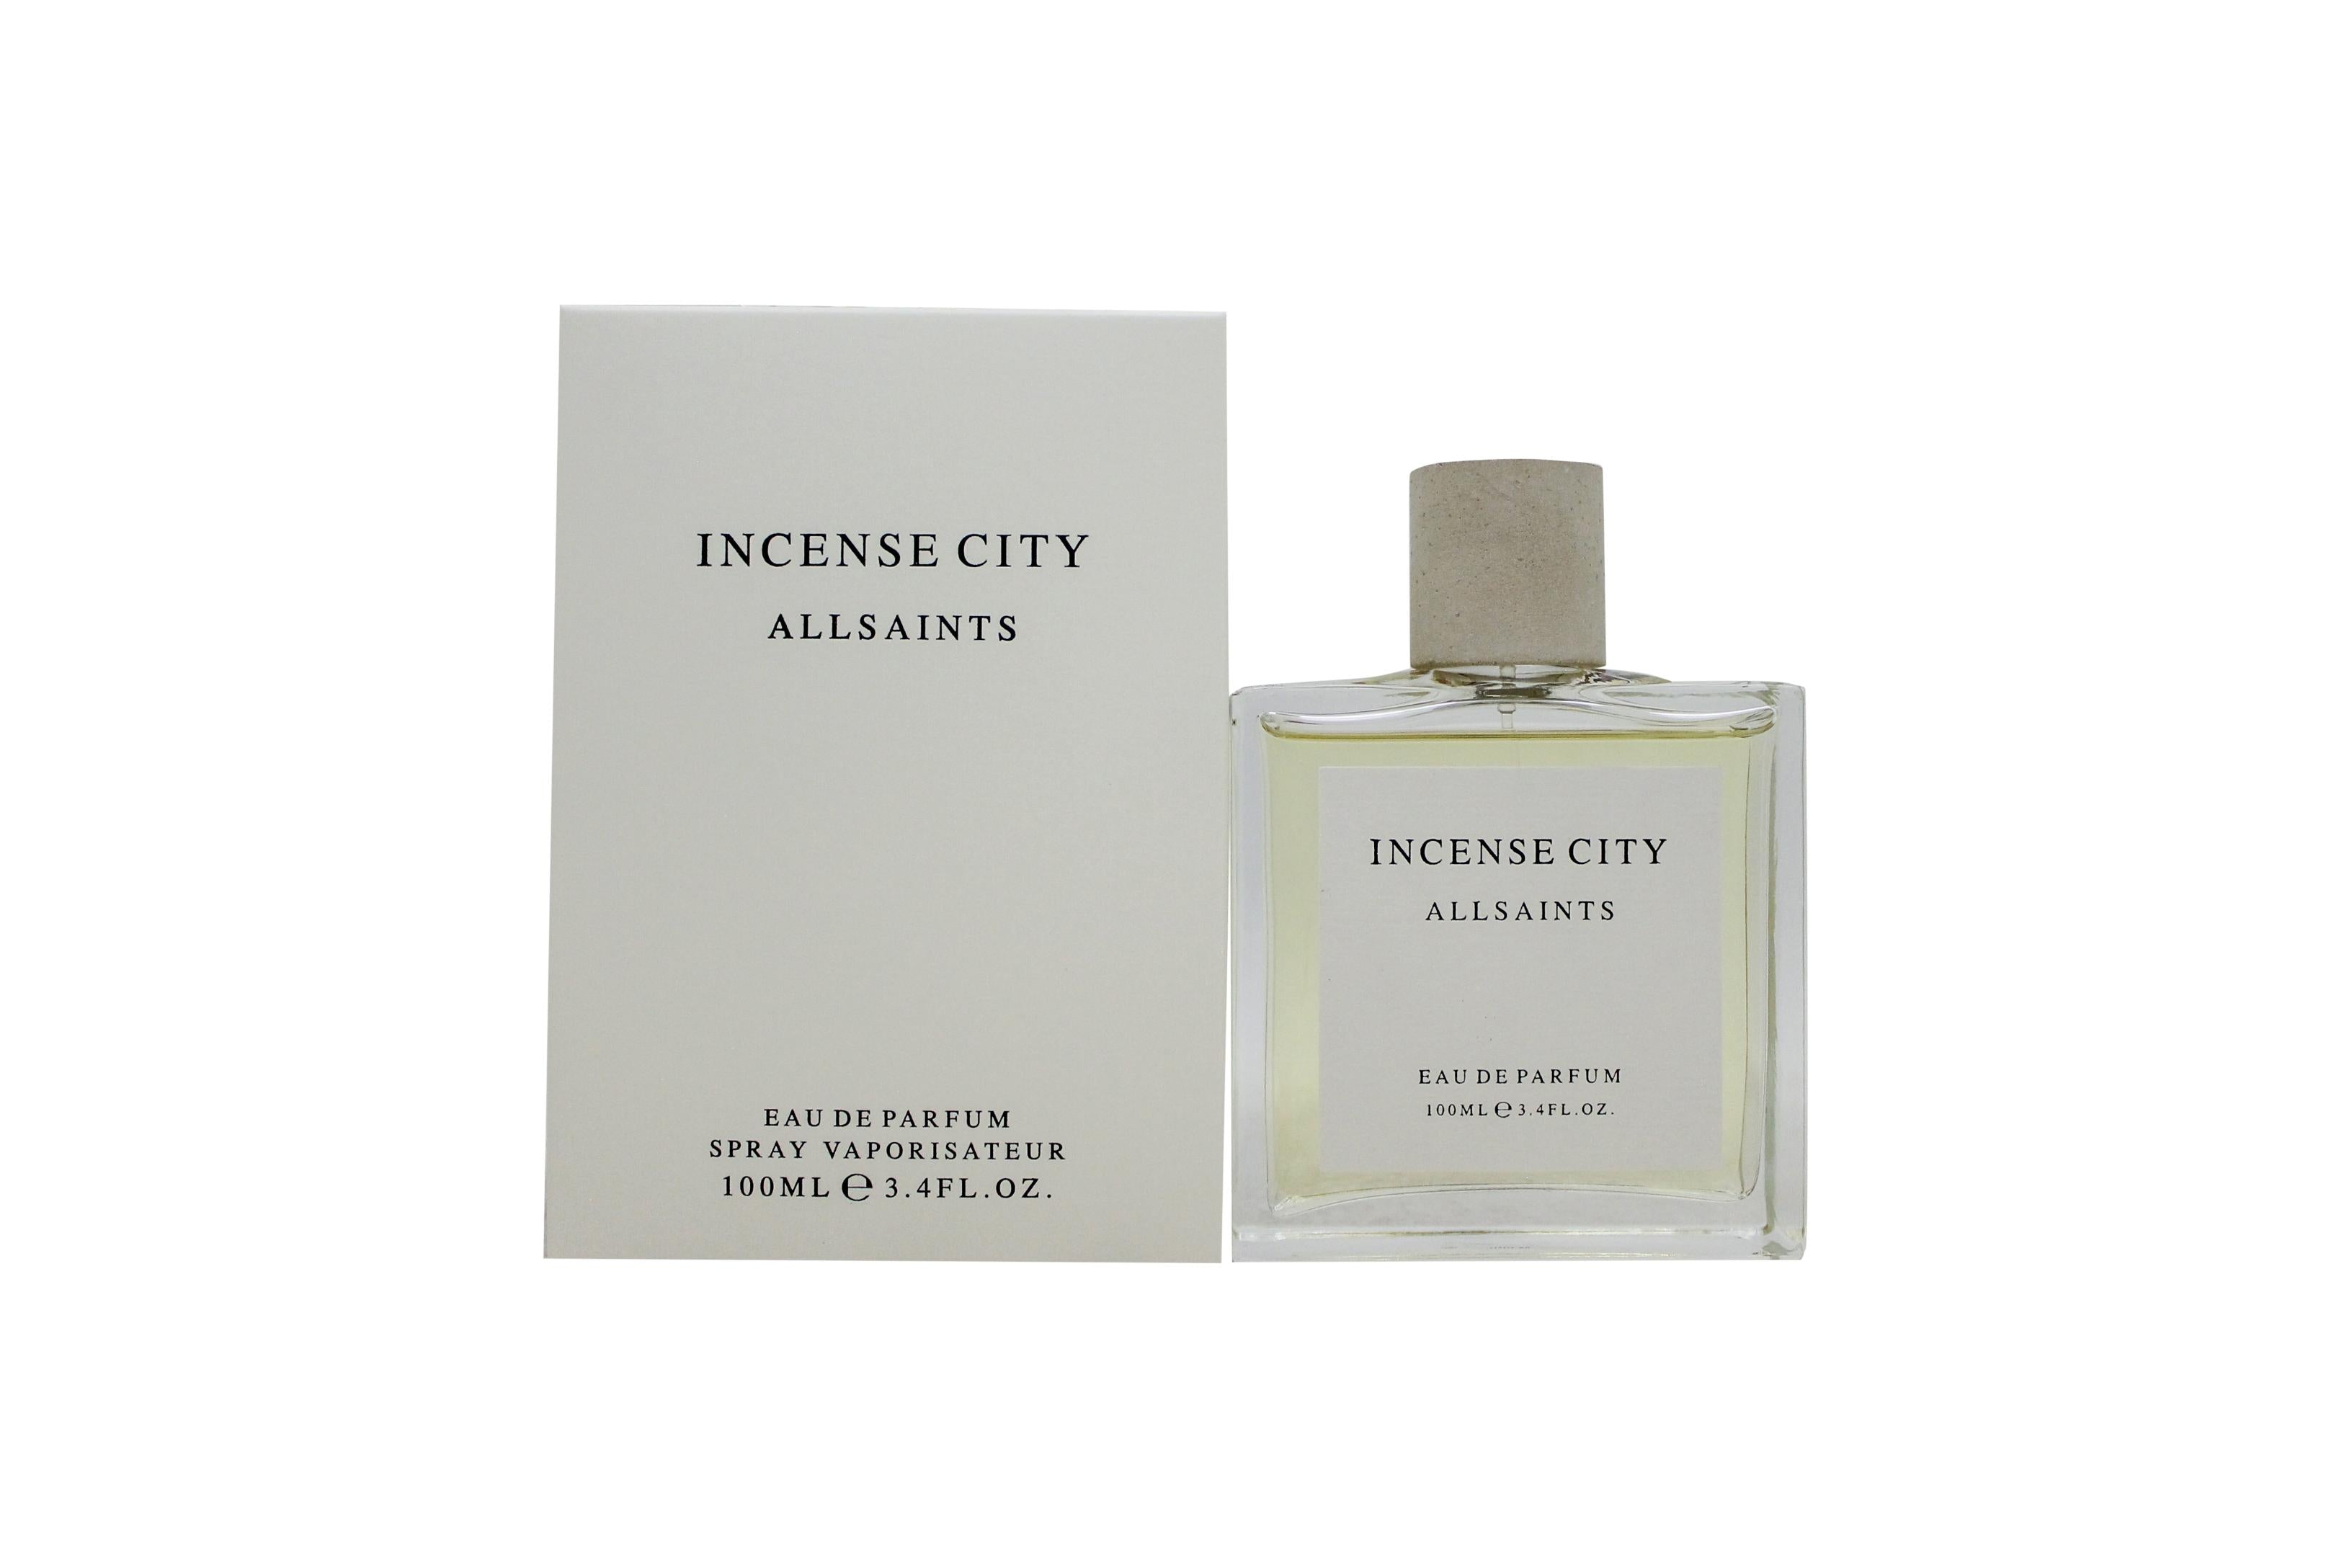 View Allsaints Incense City Eau de Parfum 100ml Spray information